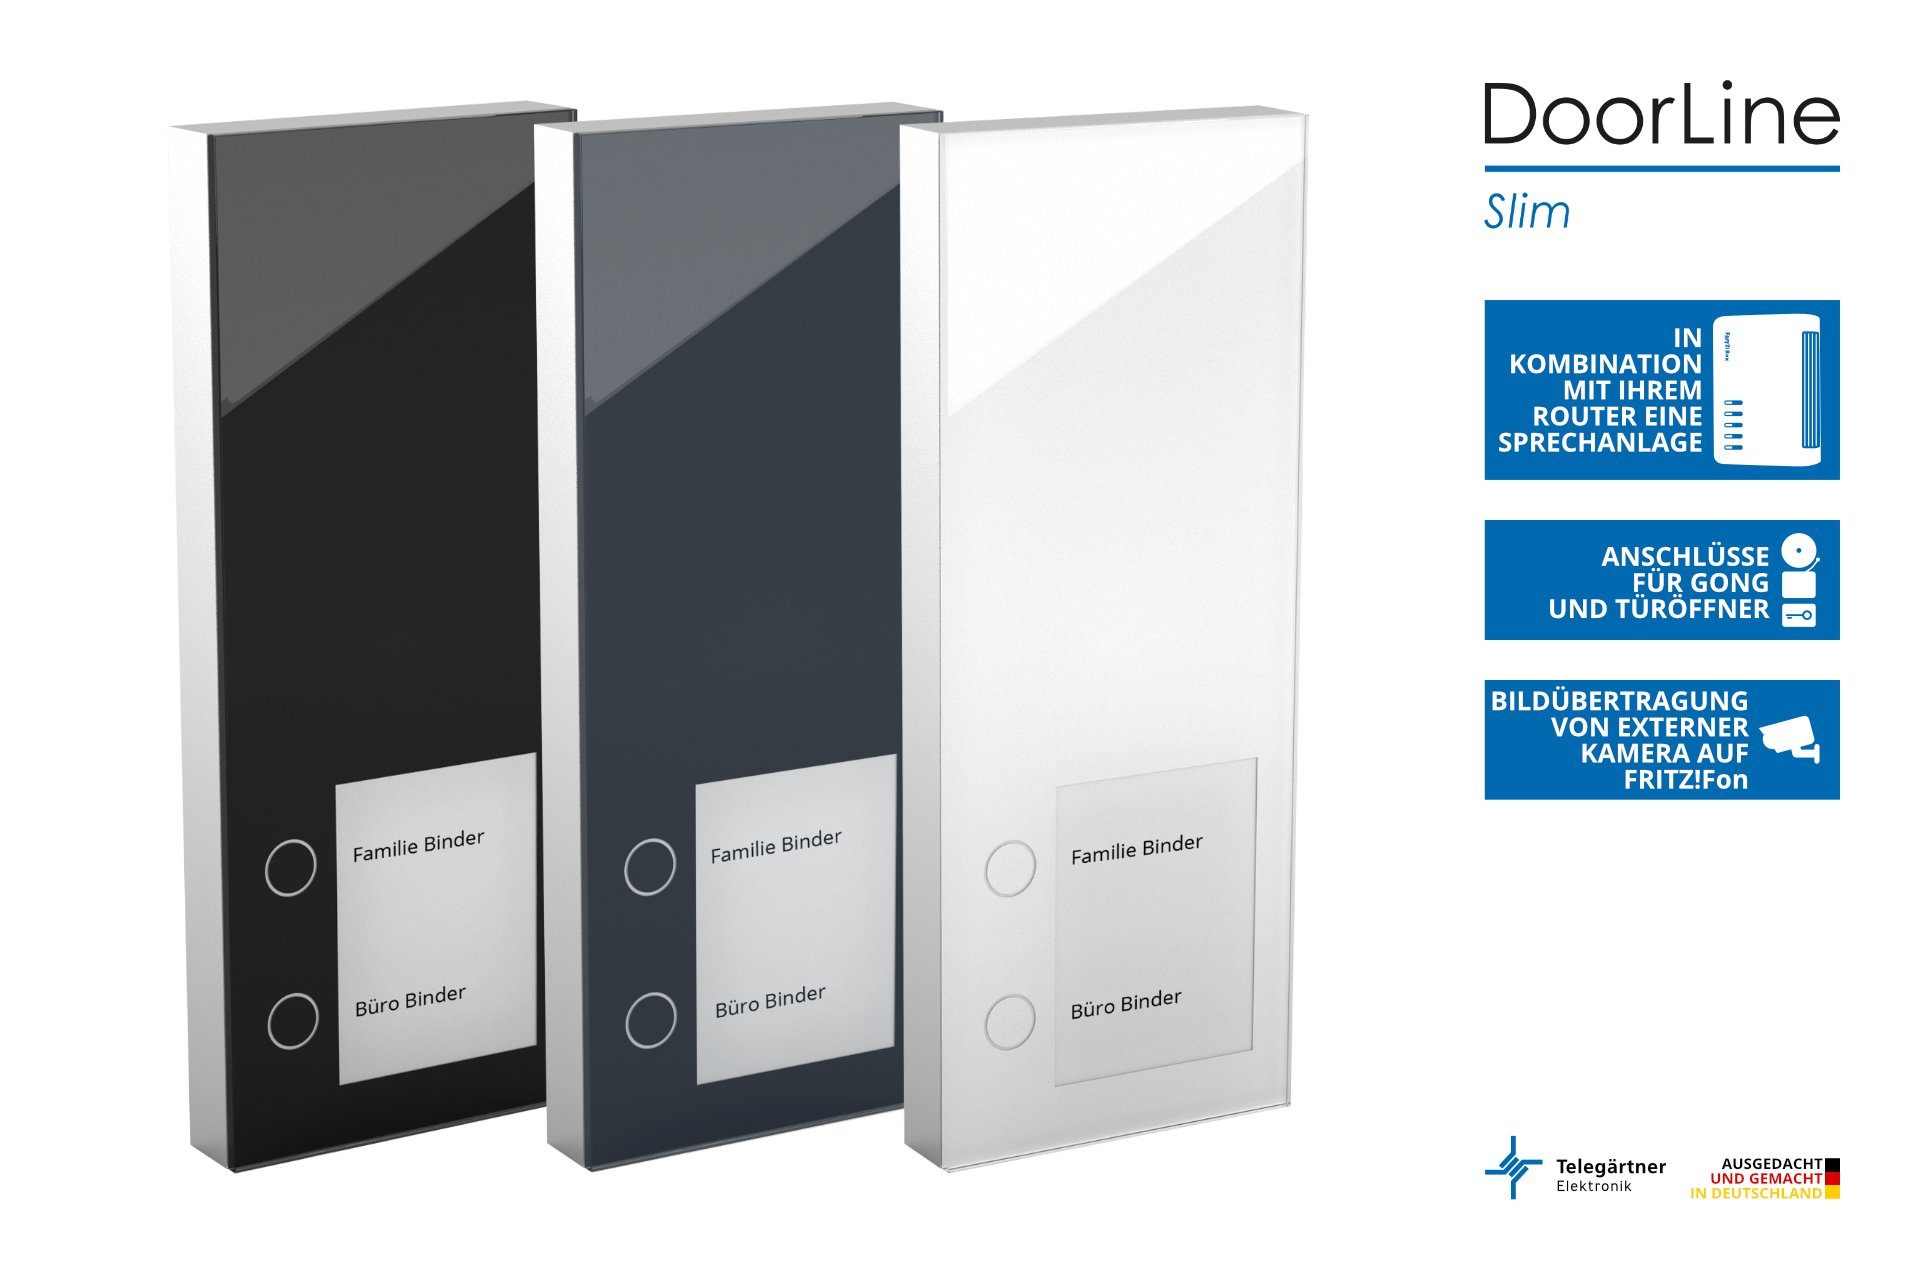 DoorLine Slim DECT Smart der mit AVM zur Home Tür-Sprechanlage Türklingel (per Knopfdrück gekoppelt) FRITZ!Box Anthrazit